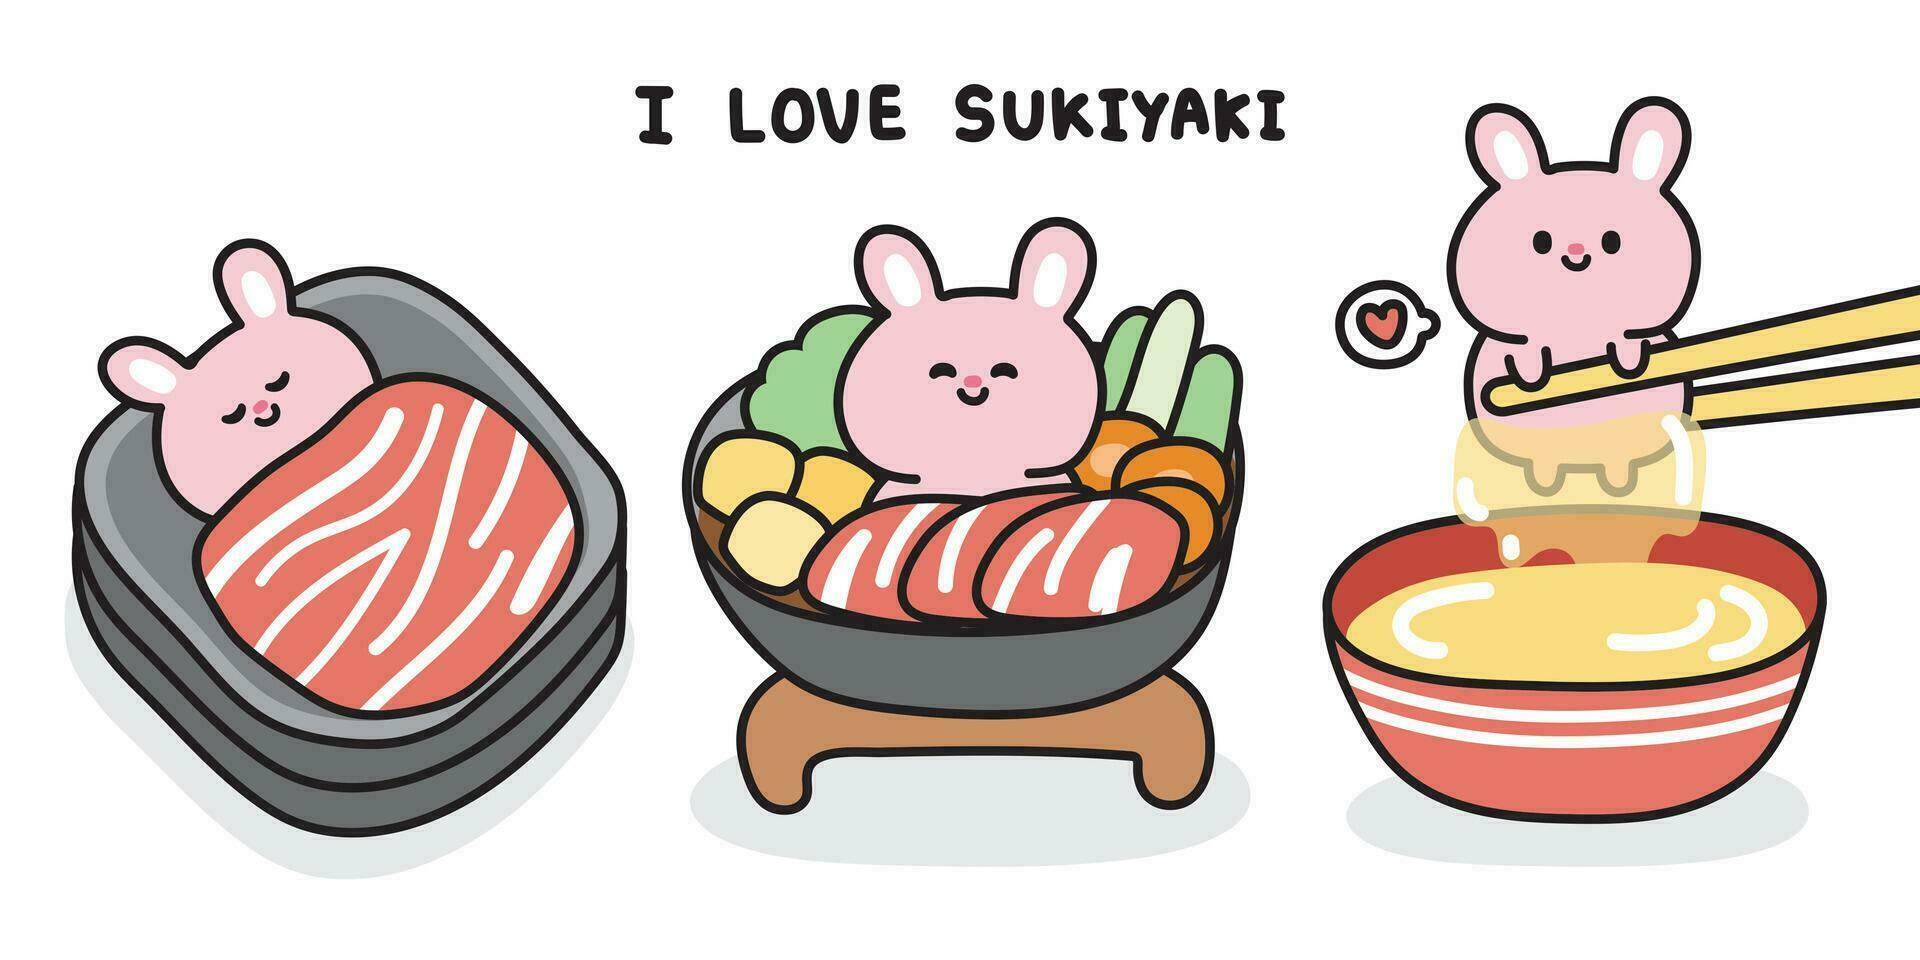 einstellen von süß Hase im Sukiyaki japanisch Essen Konzept.Nagetier Tier Charakter Karikatur design.bunny.meat.raw frisch Ei.Gemüse.asiatisch Mahlzeit.kawaii.Vektorillustration. vektor